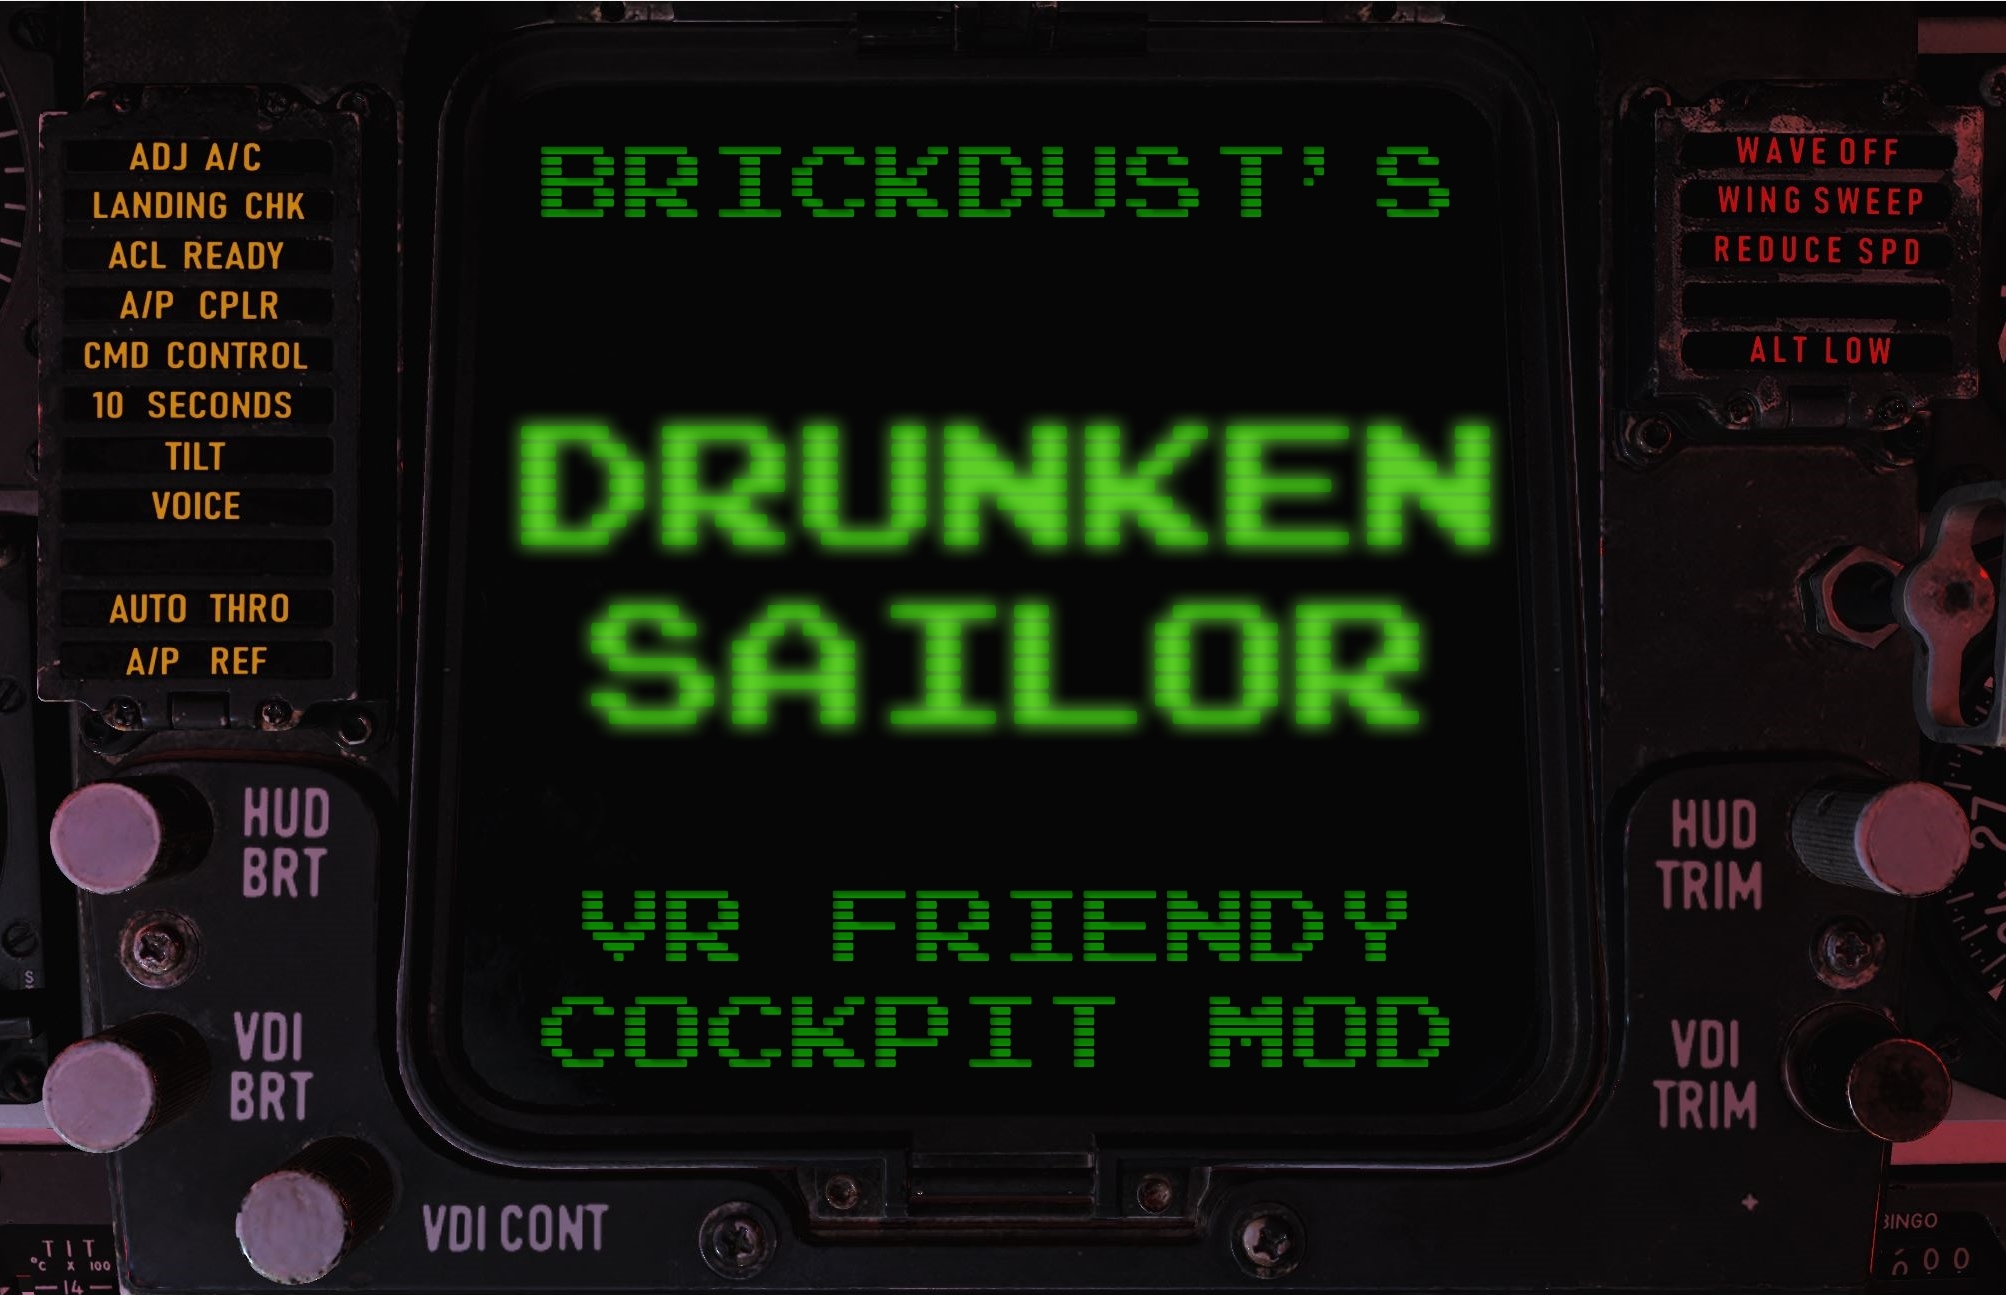 DCS: F-14 - Brickdust's "Drunken Sailor" VR Friendly Cockpit [v0.5 - 10/06/2019]